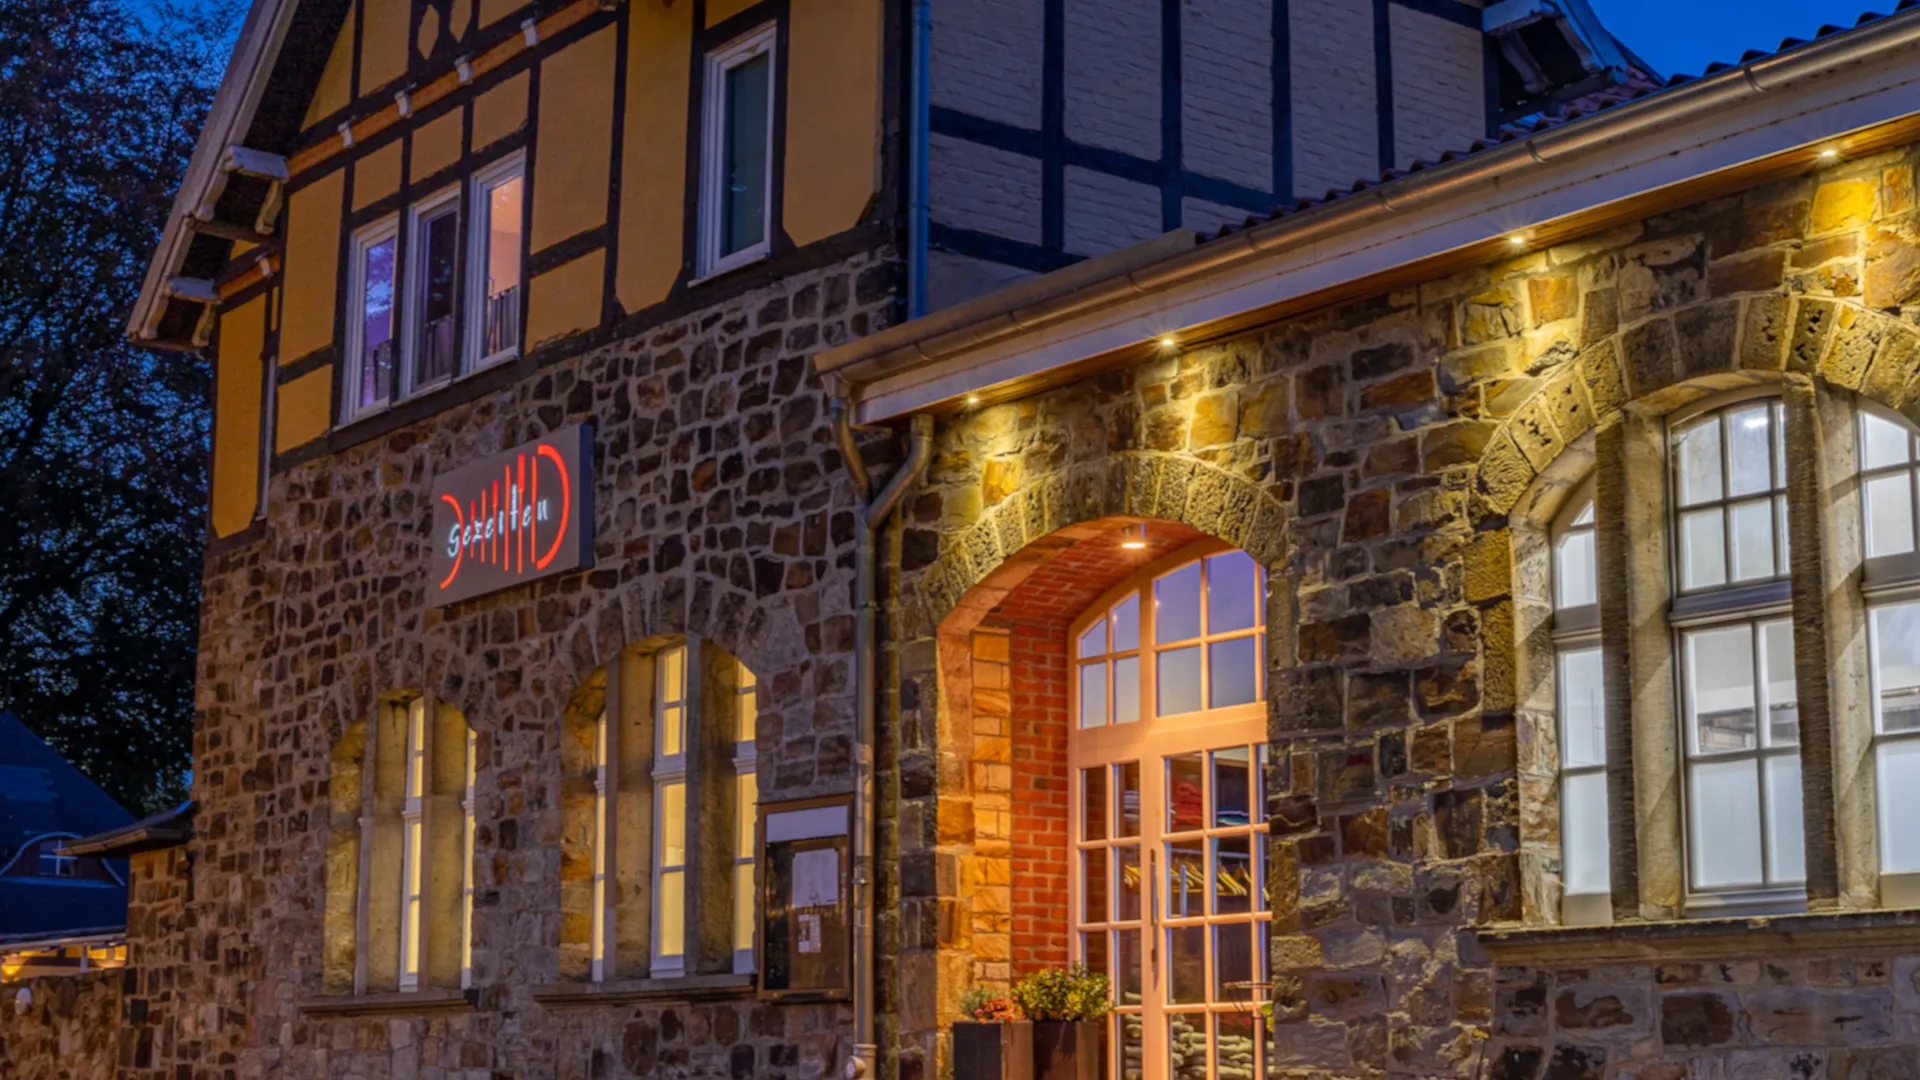 Eindrücke des Restaurant Gezeiten in Osnabrück